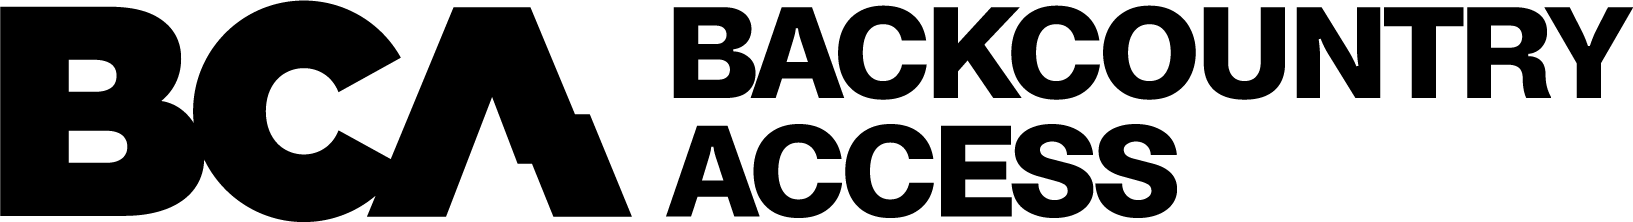 bca-logo_off-black_hor-stack.png